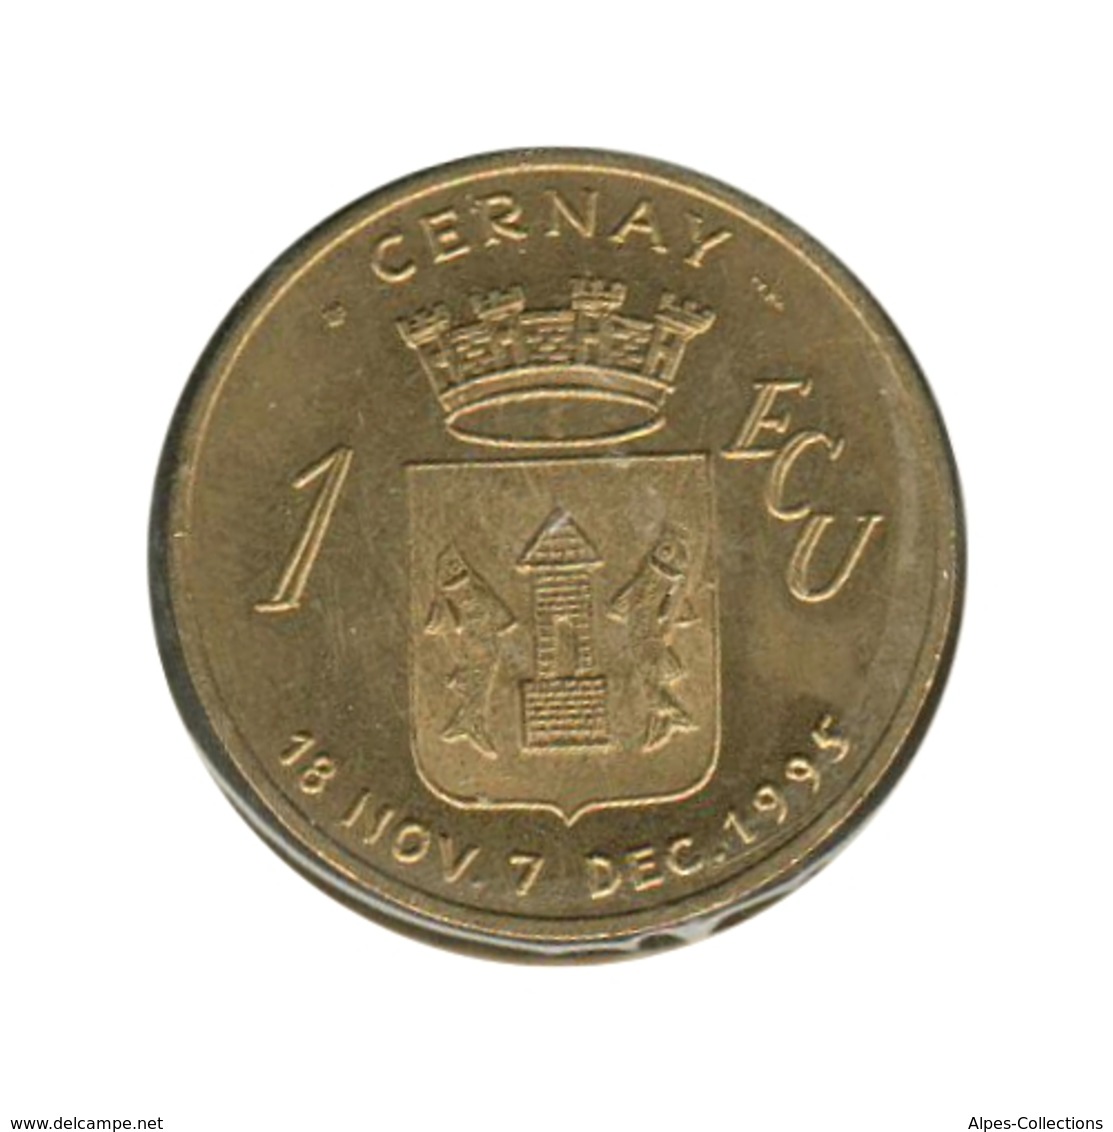 CERNAY - EC0010.1 - 1 ECU DES VILLES - Réf: T44 - 1995 - Euros Des Villes